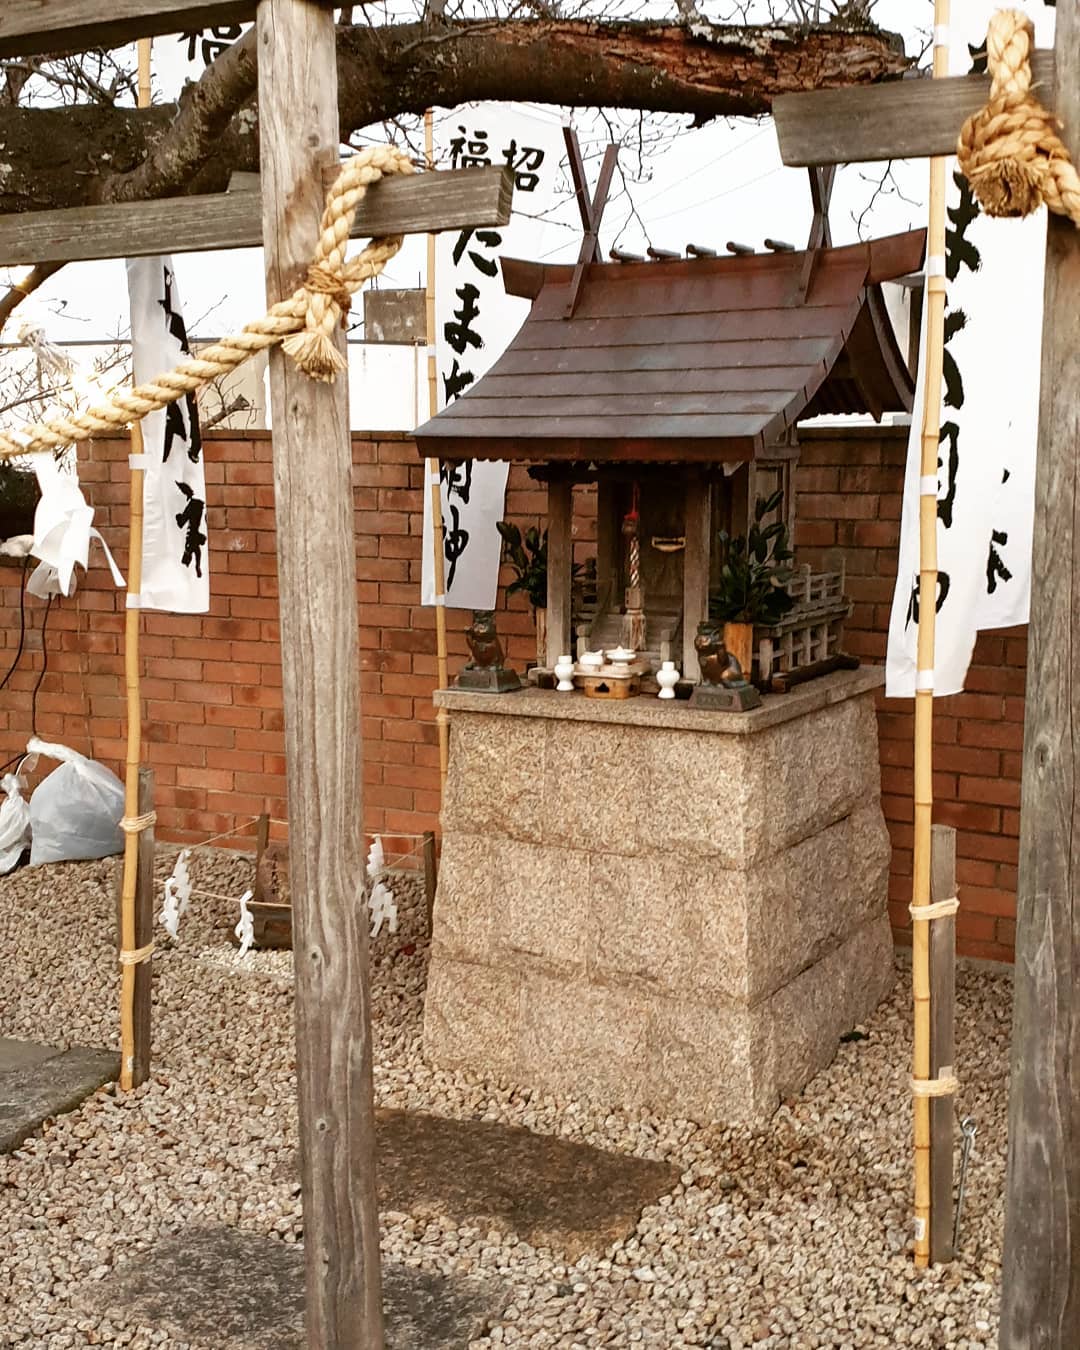 wakayama tama densha - shrine